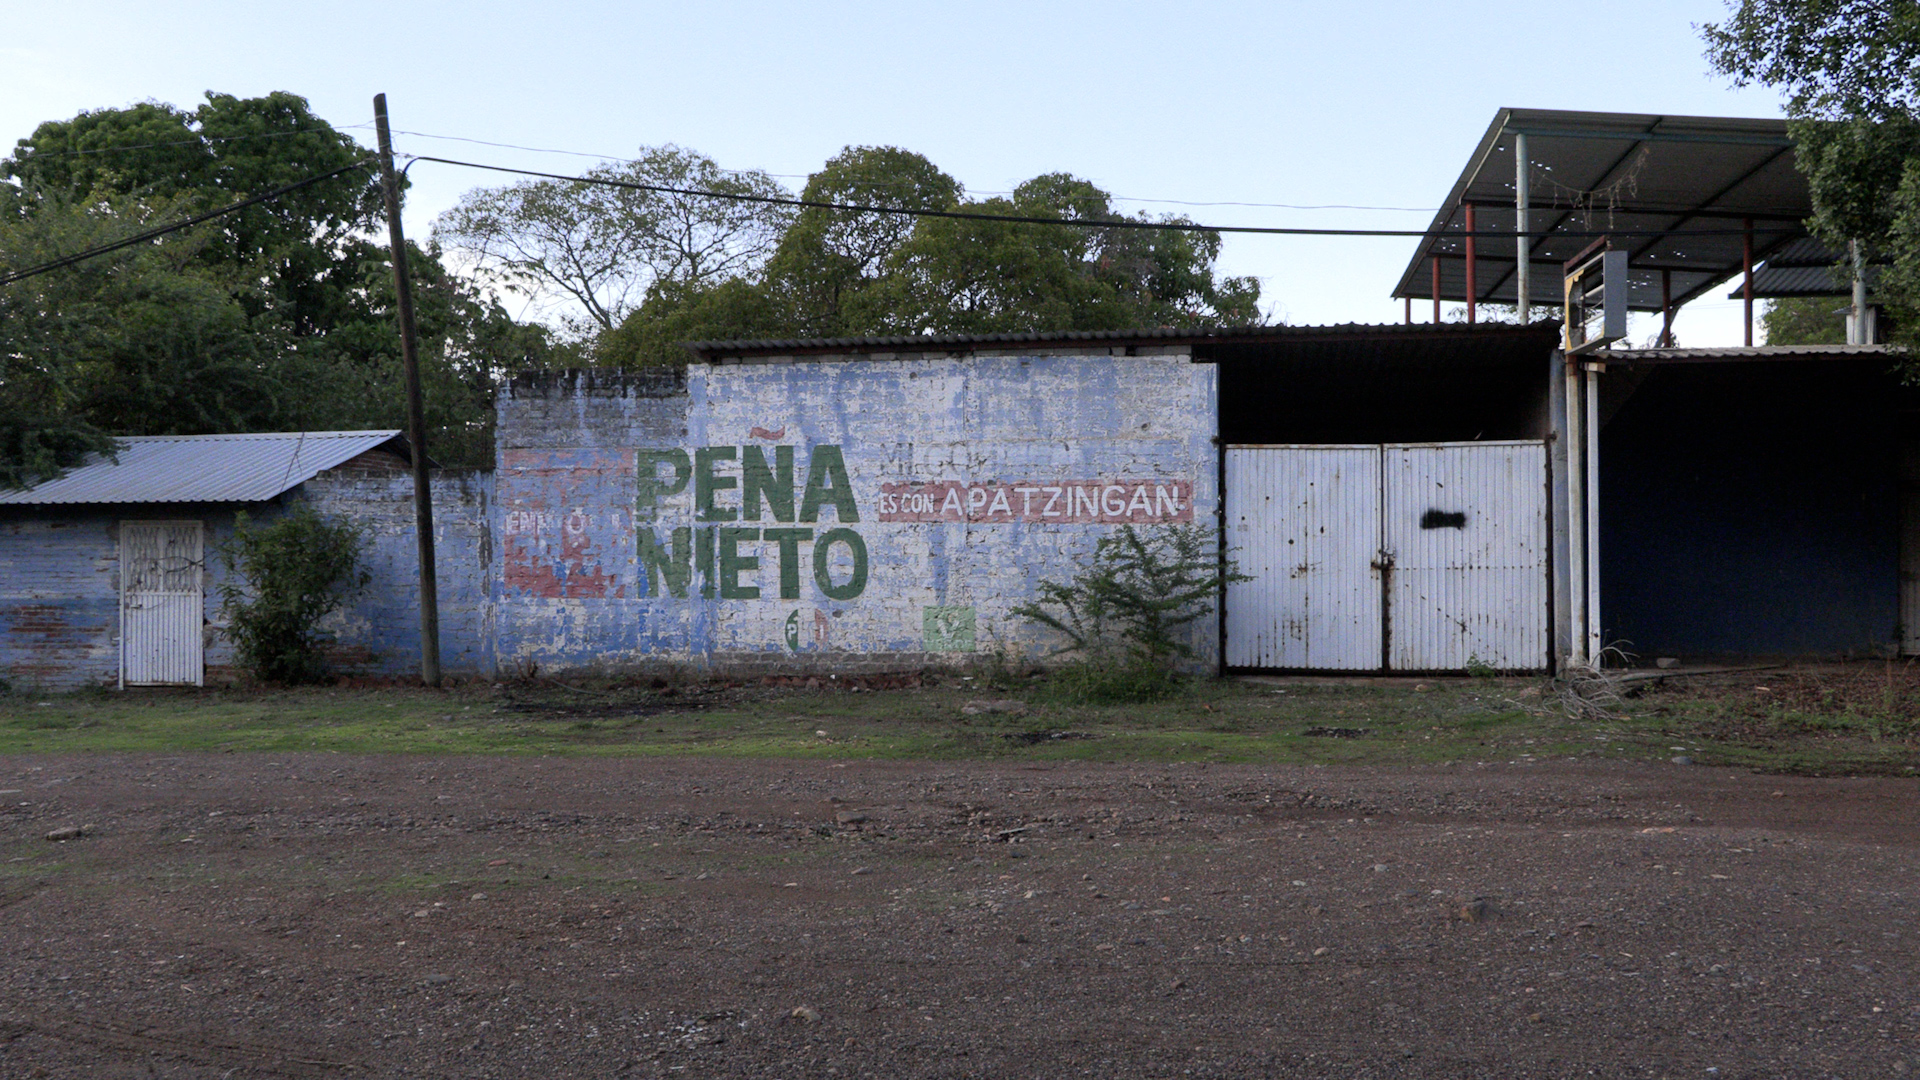 Casas baleadas se ven por todas partes en la cuna del Mencho (Foto: J.M. Mariscal/Infobae México)